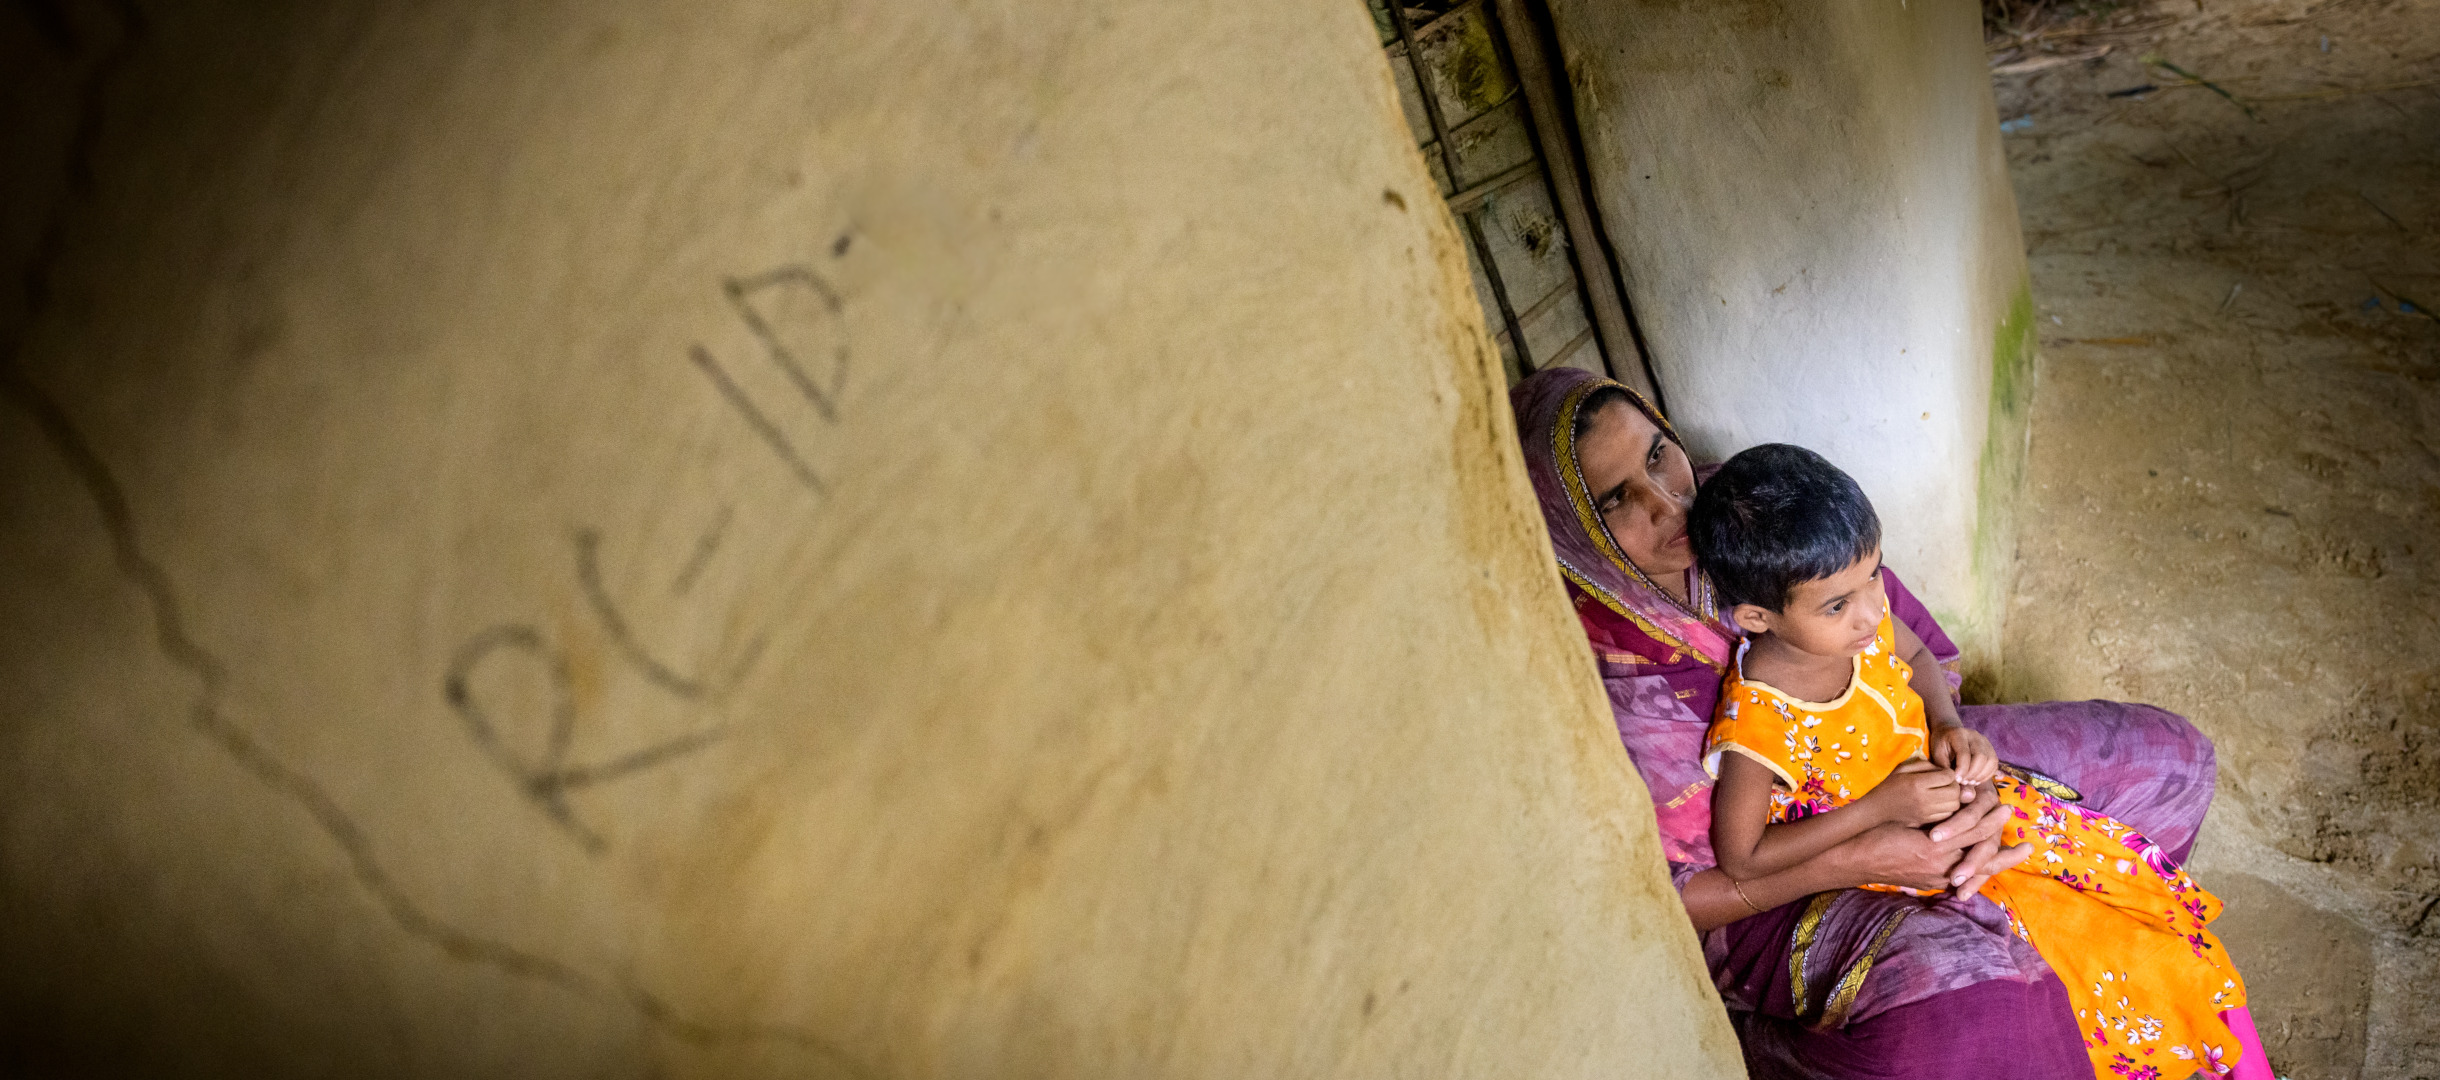 Patenkind Fahema mit ihrer Mutter vor ihrem Haus in Bangladesch